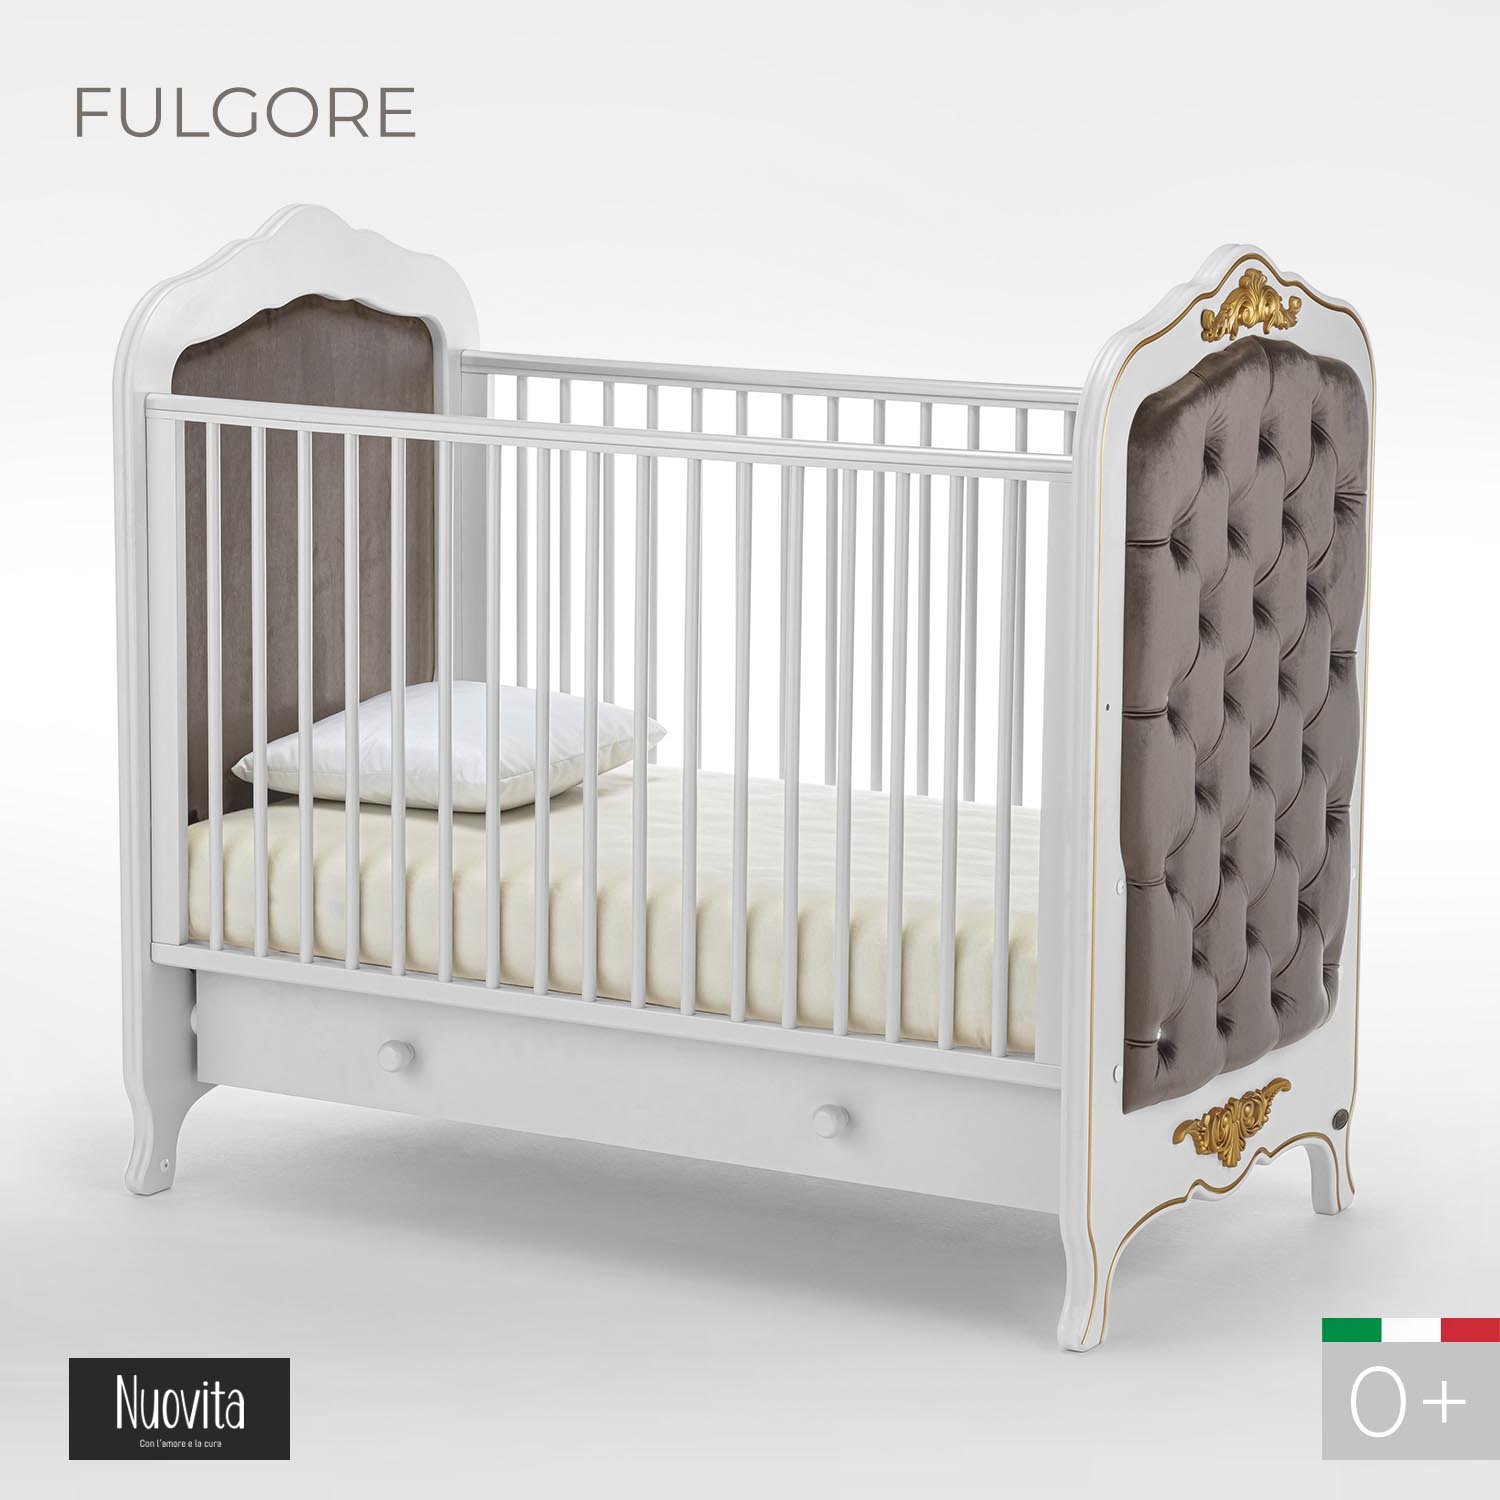 Детская кровать Nuovita Fulgore, белый шапка с градиентным узором и россыпью стразов regina детская